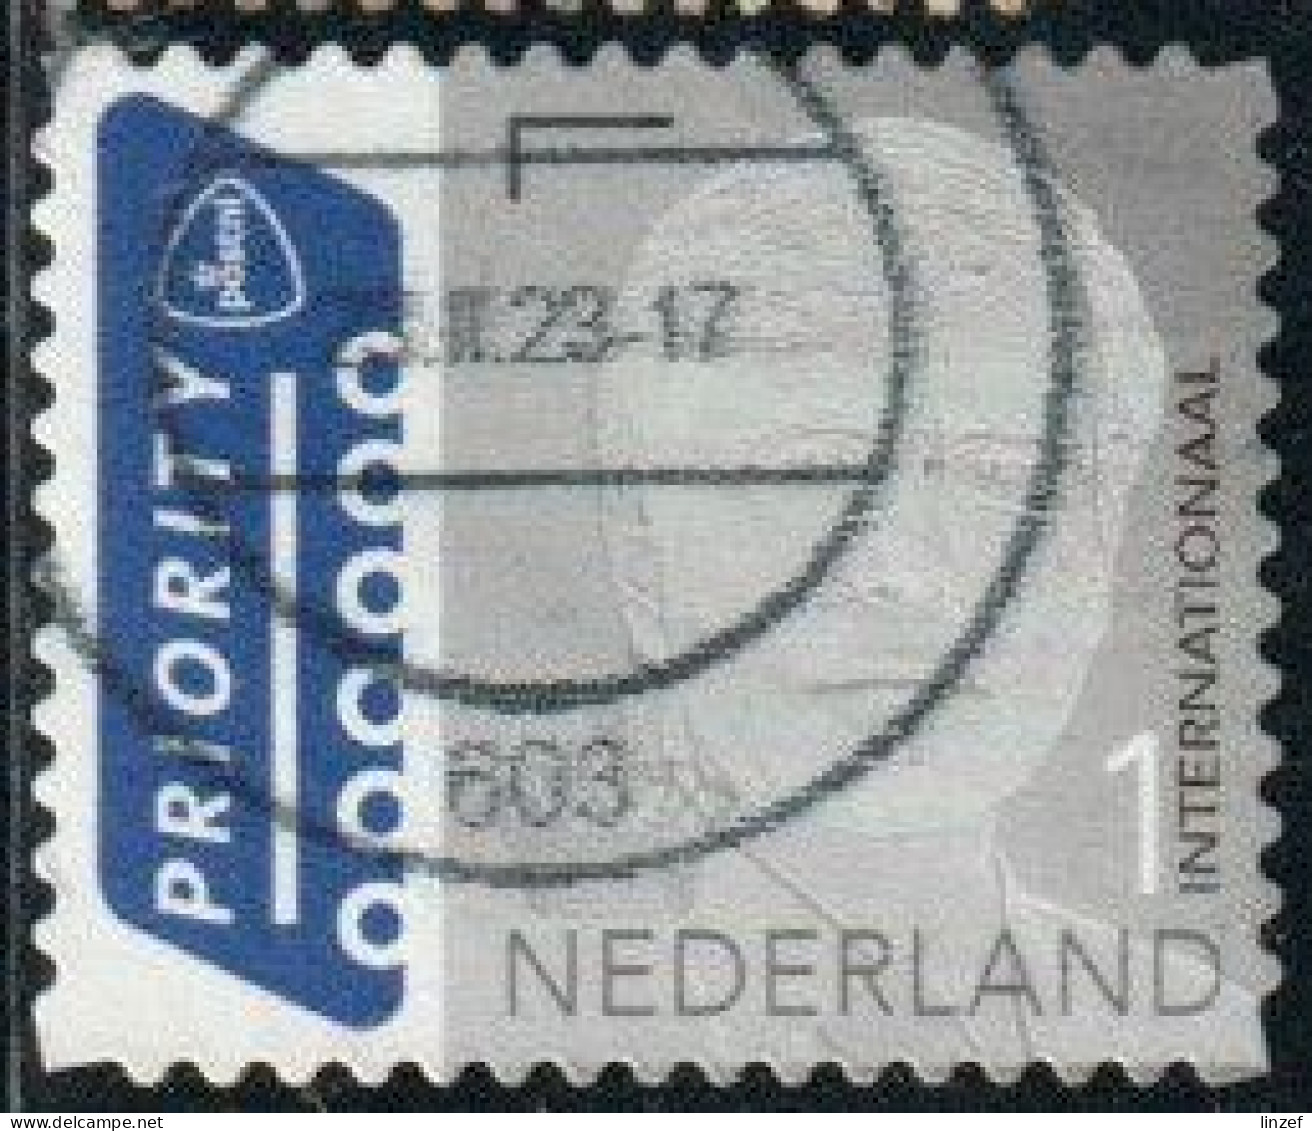 Pays-Bas 2022 Yv. N°4053 - Willem-Alexander - Oblitéré - Used Stamps